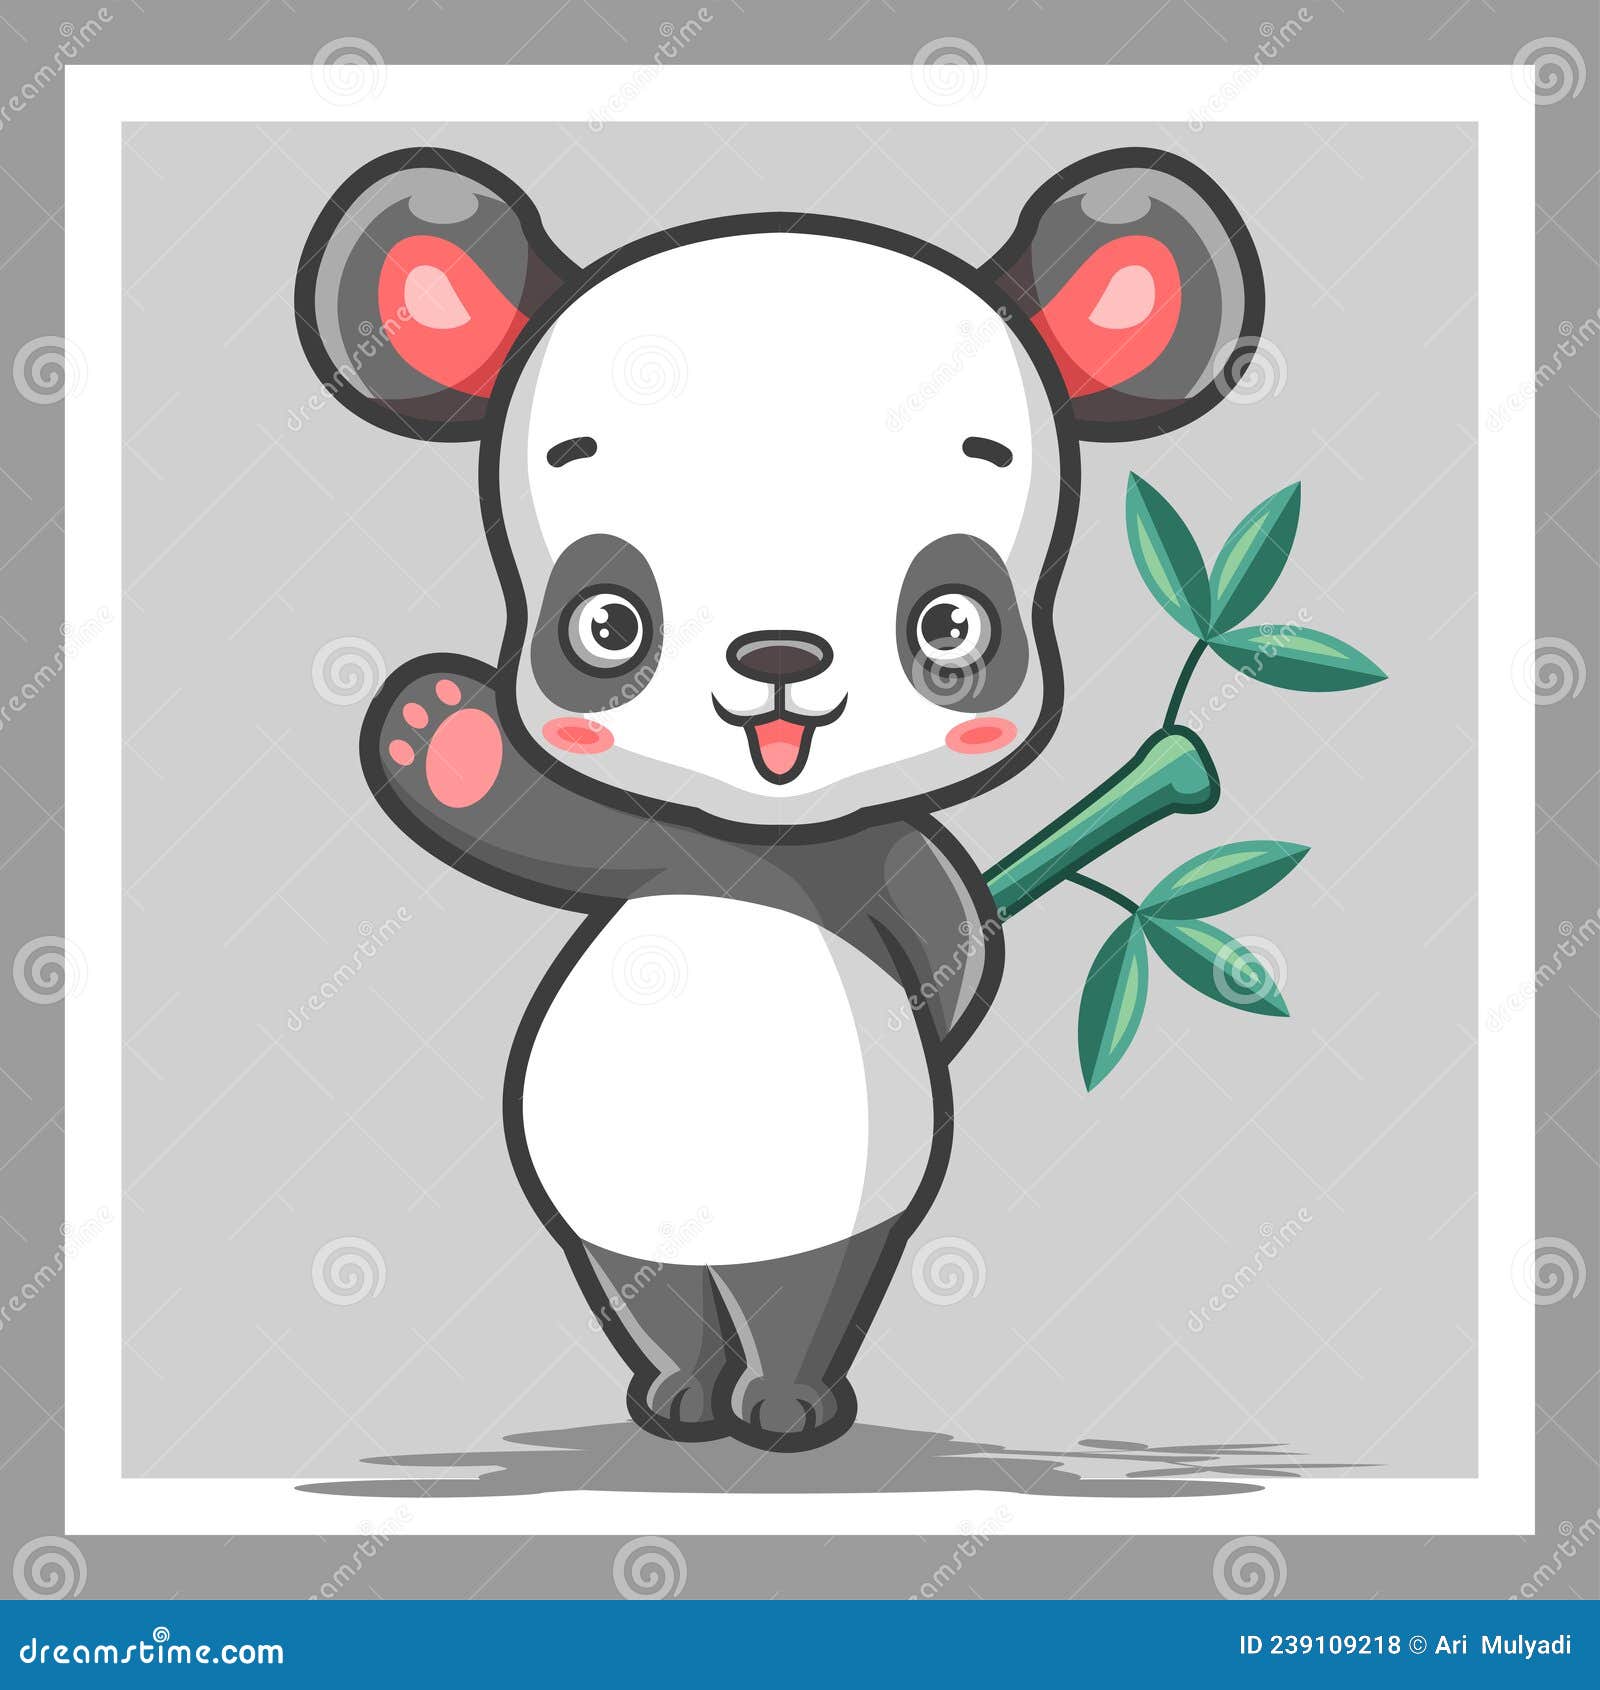 Ilustração de desenhos animados de panda com raiva posando isolado